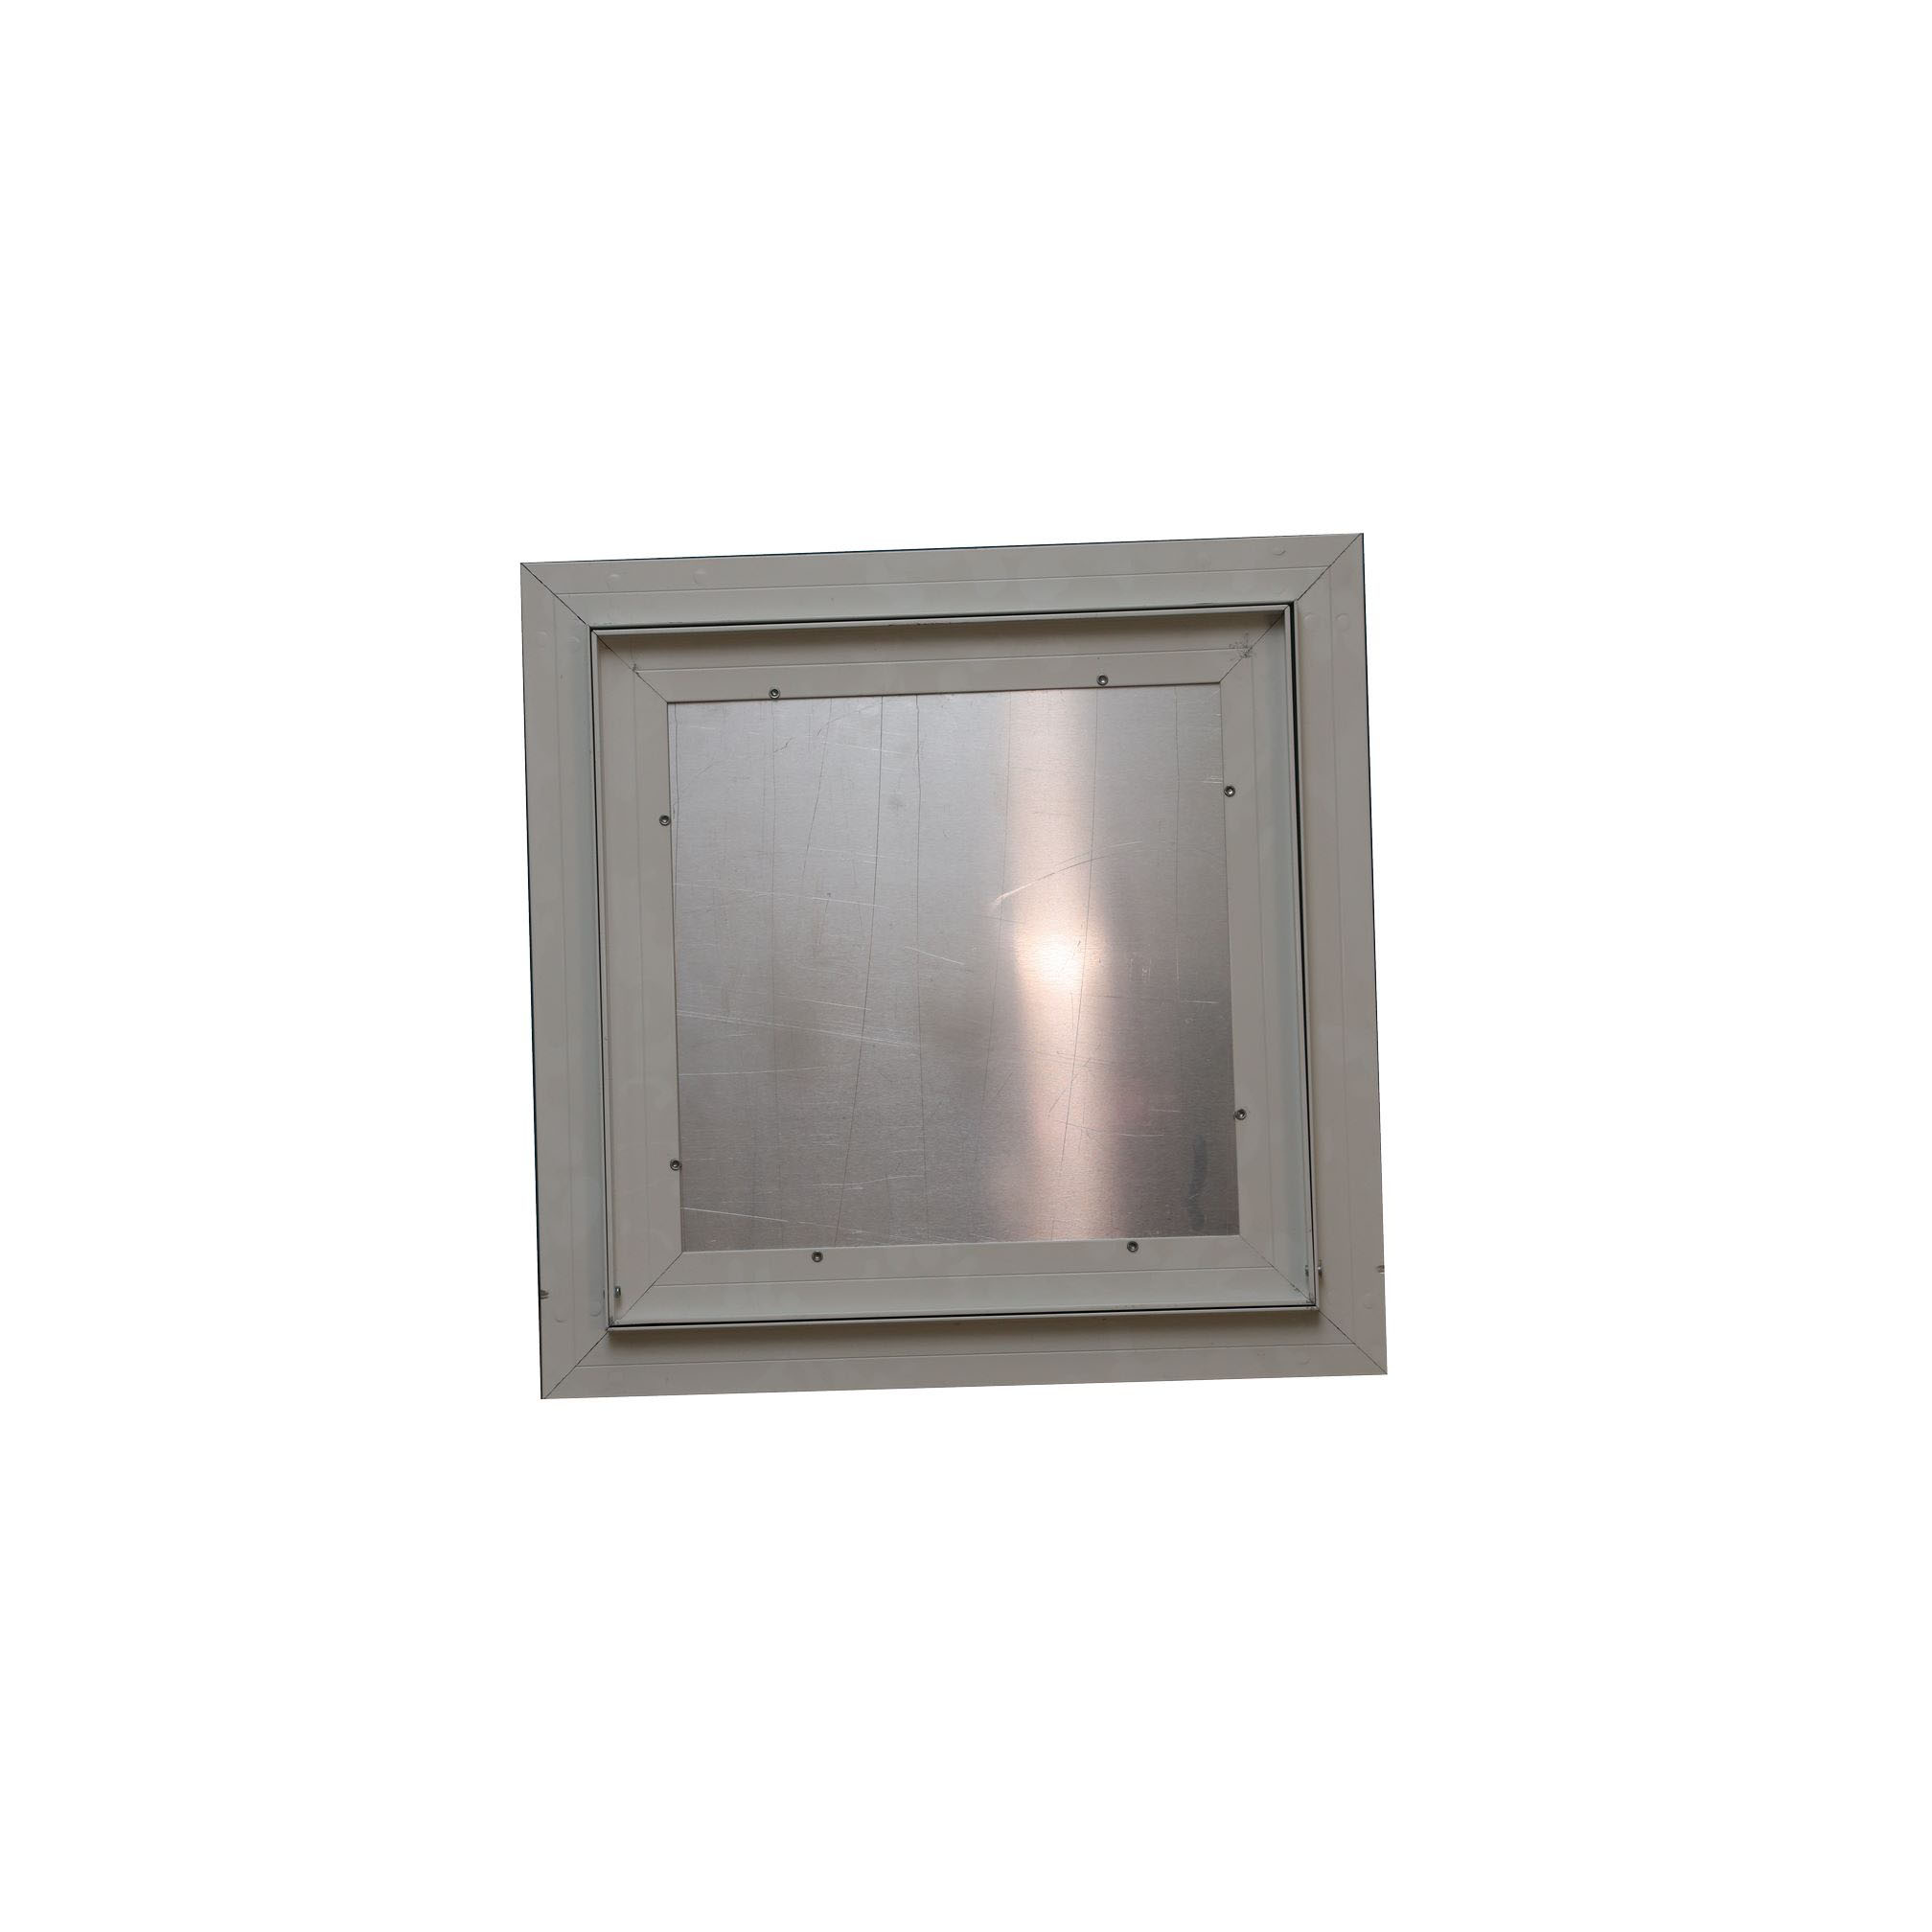 Ceiling Access Door - Aluminium - 40X40Cm